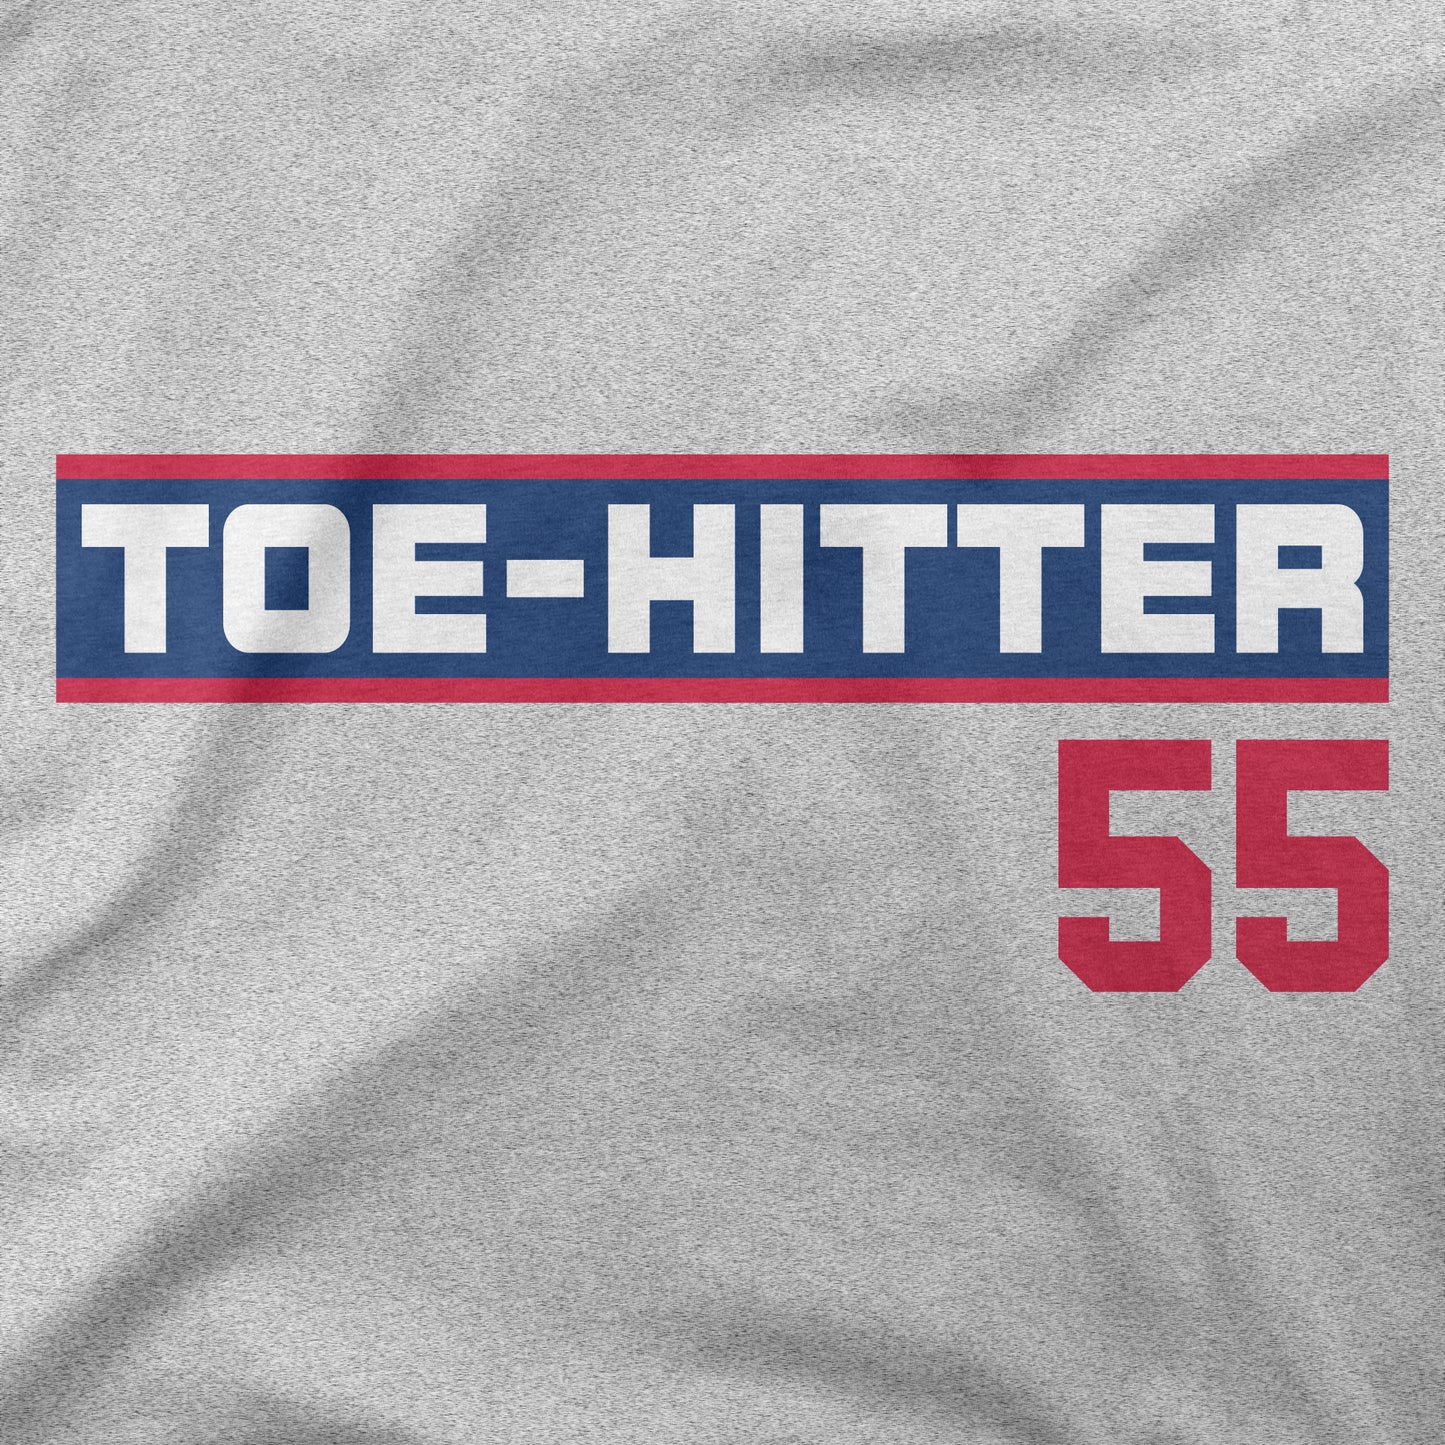 Toe Hitter 55 | T-Shirt